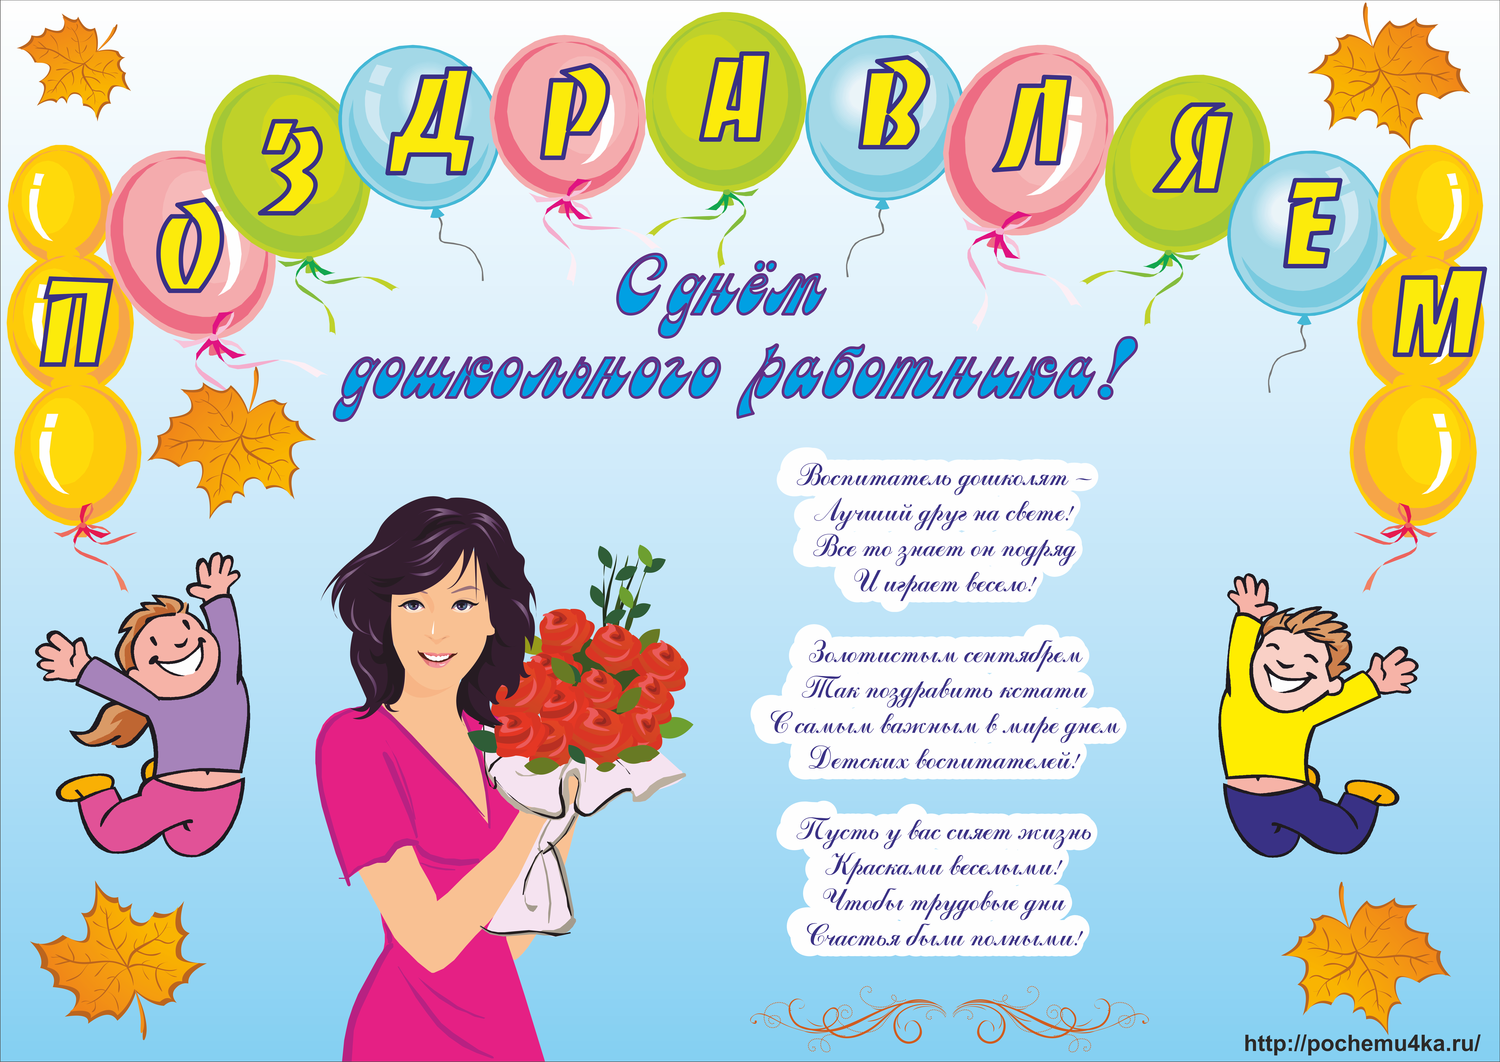 Поздравление женщин в детском саду. Плакат ко Дню воспитателя. С днем дошкольного работника плакат. Поздравление воспитателю. Поздравительный плакат ко Дню воспитателя.